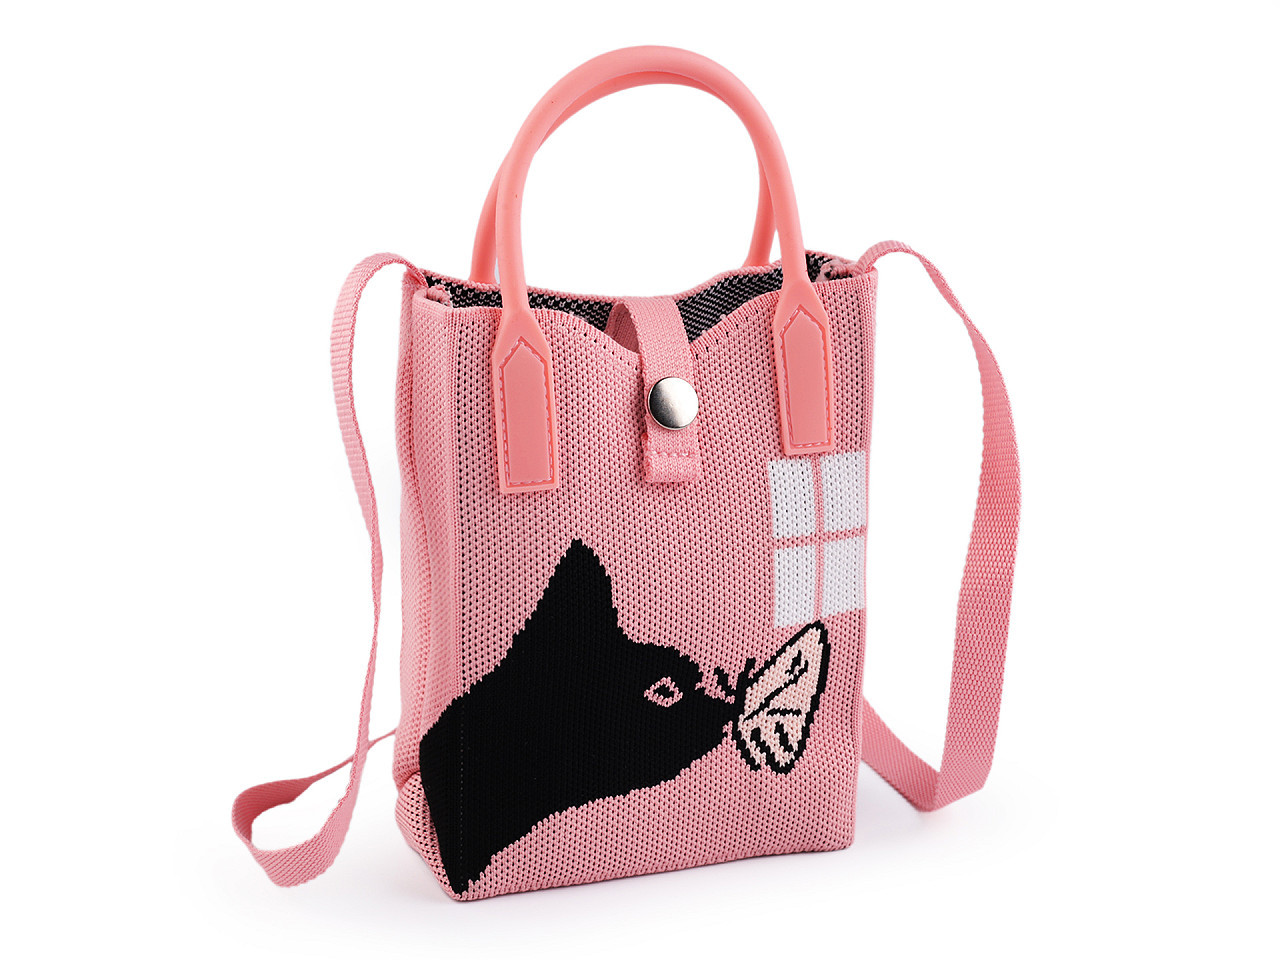 Dívčí textilní kabelka / taška kočka 12x18 cm, barva 2 růžová světlá